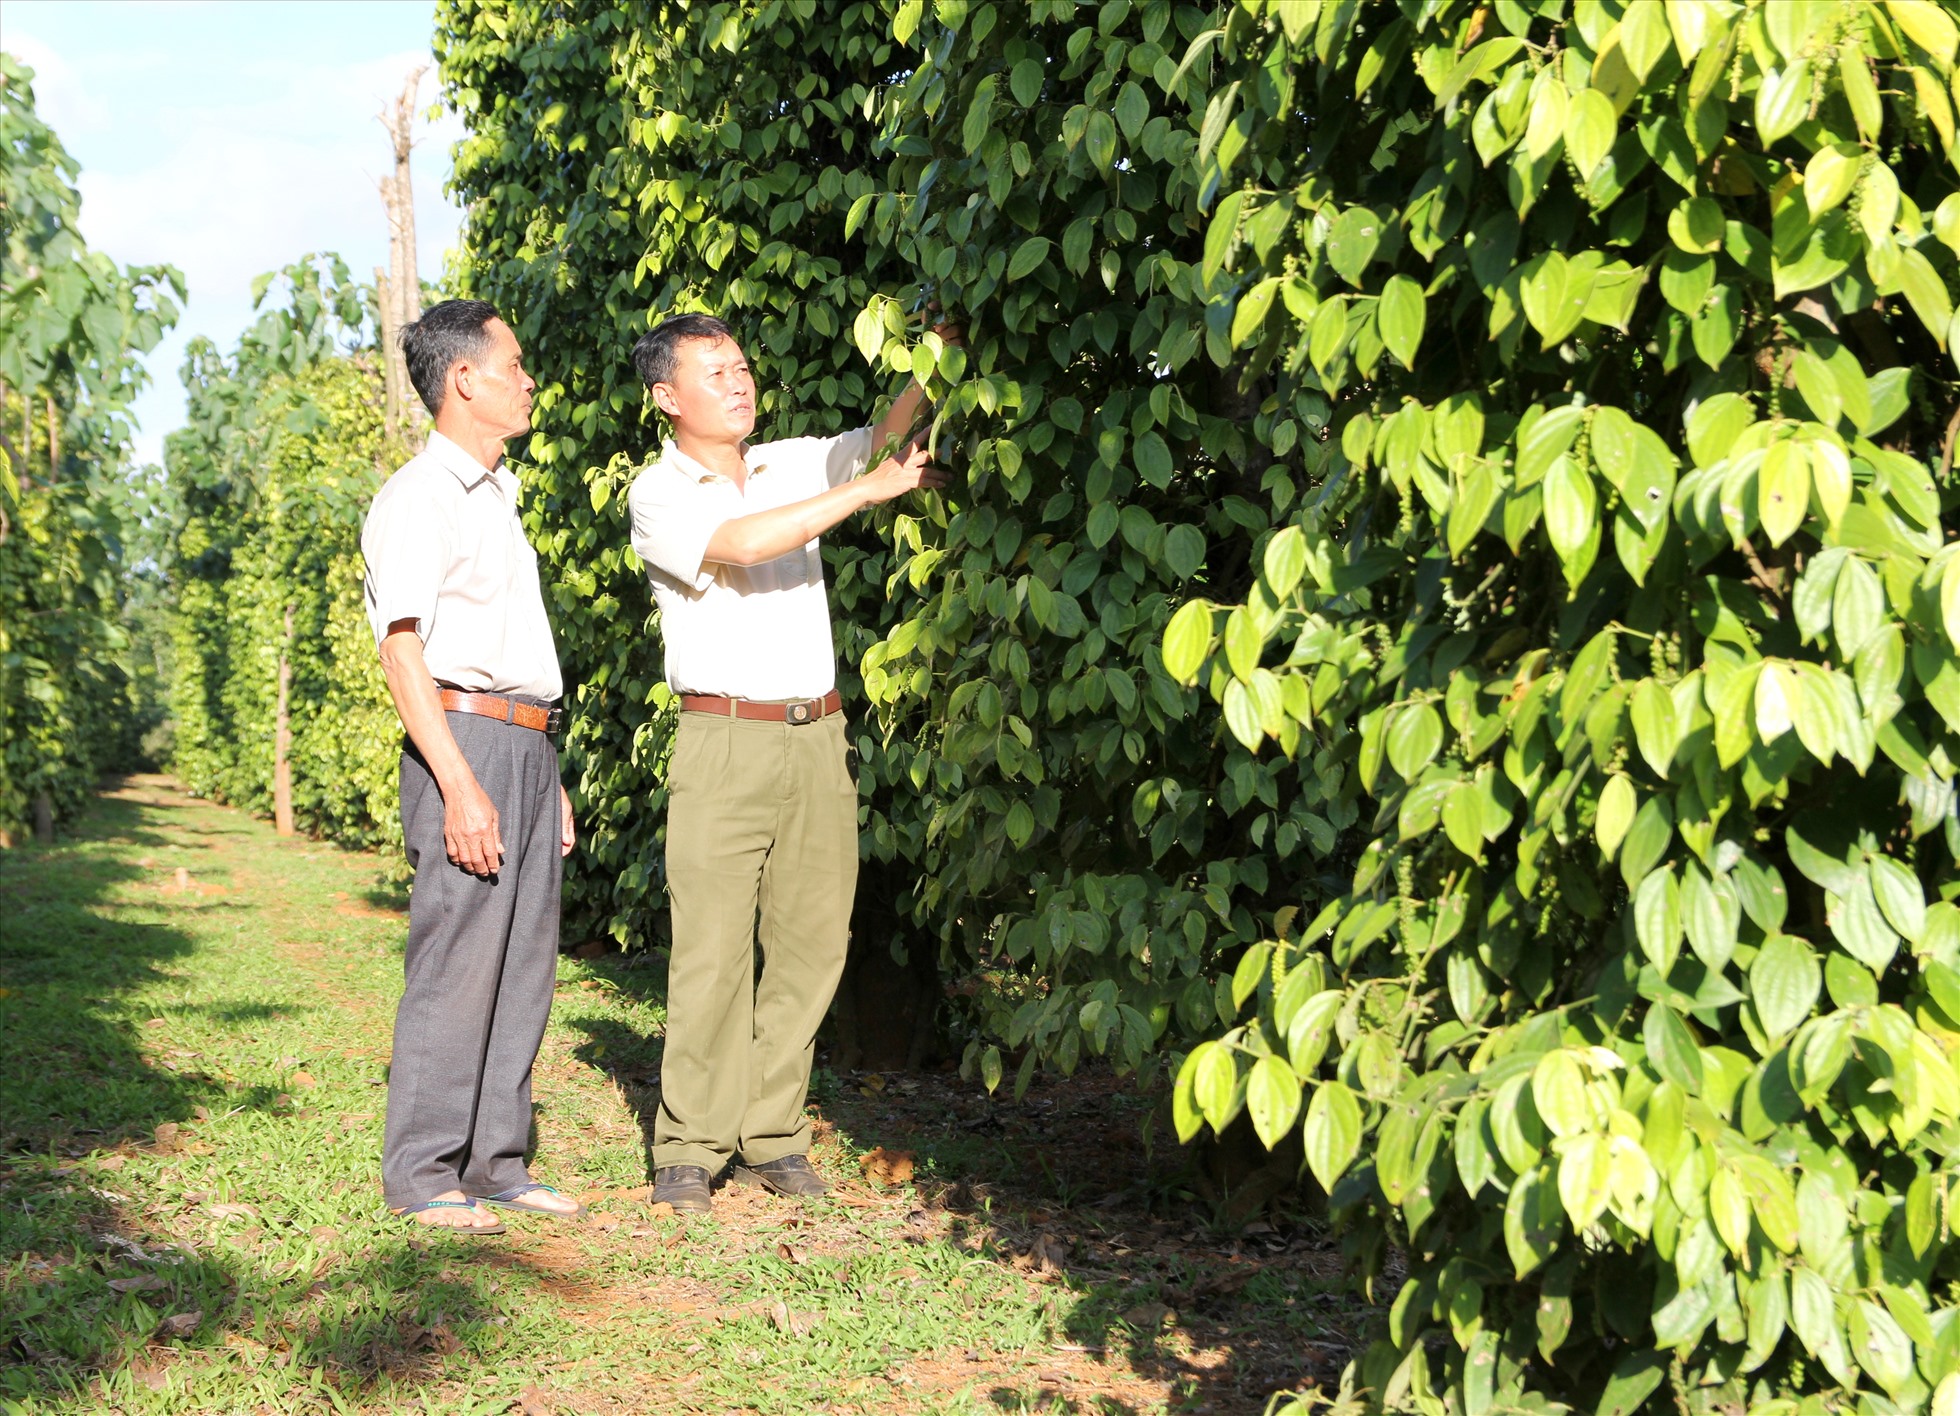 Sau khi được tham gia các lớp tập huấn, đào tạo nghề nông nghiệp người dân Đắk Nông đã tự tin hơn trong việc phát triển kinh tế. Ảnh: Phan Tuấn